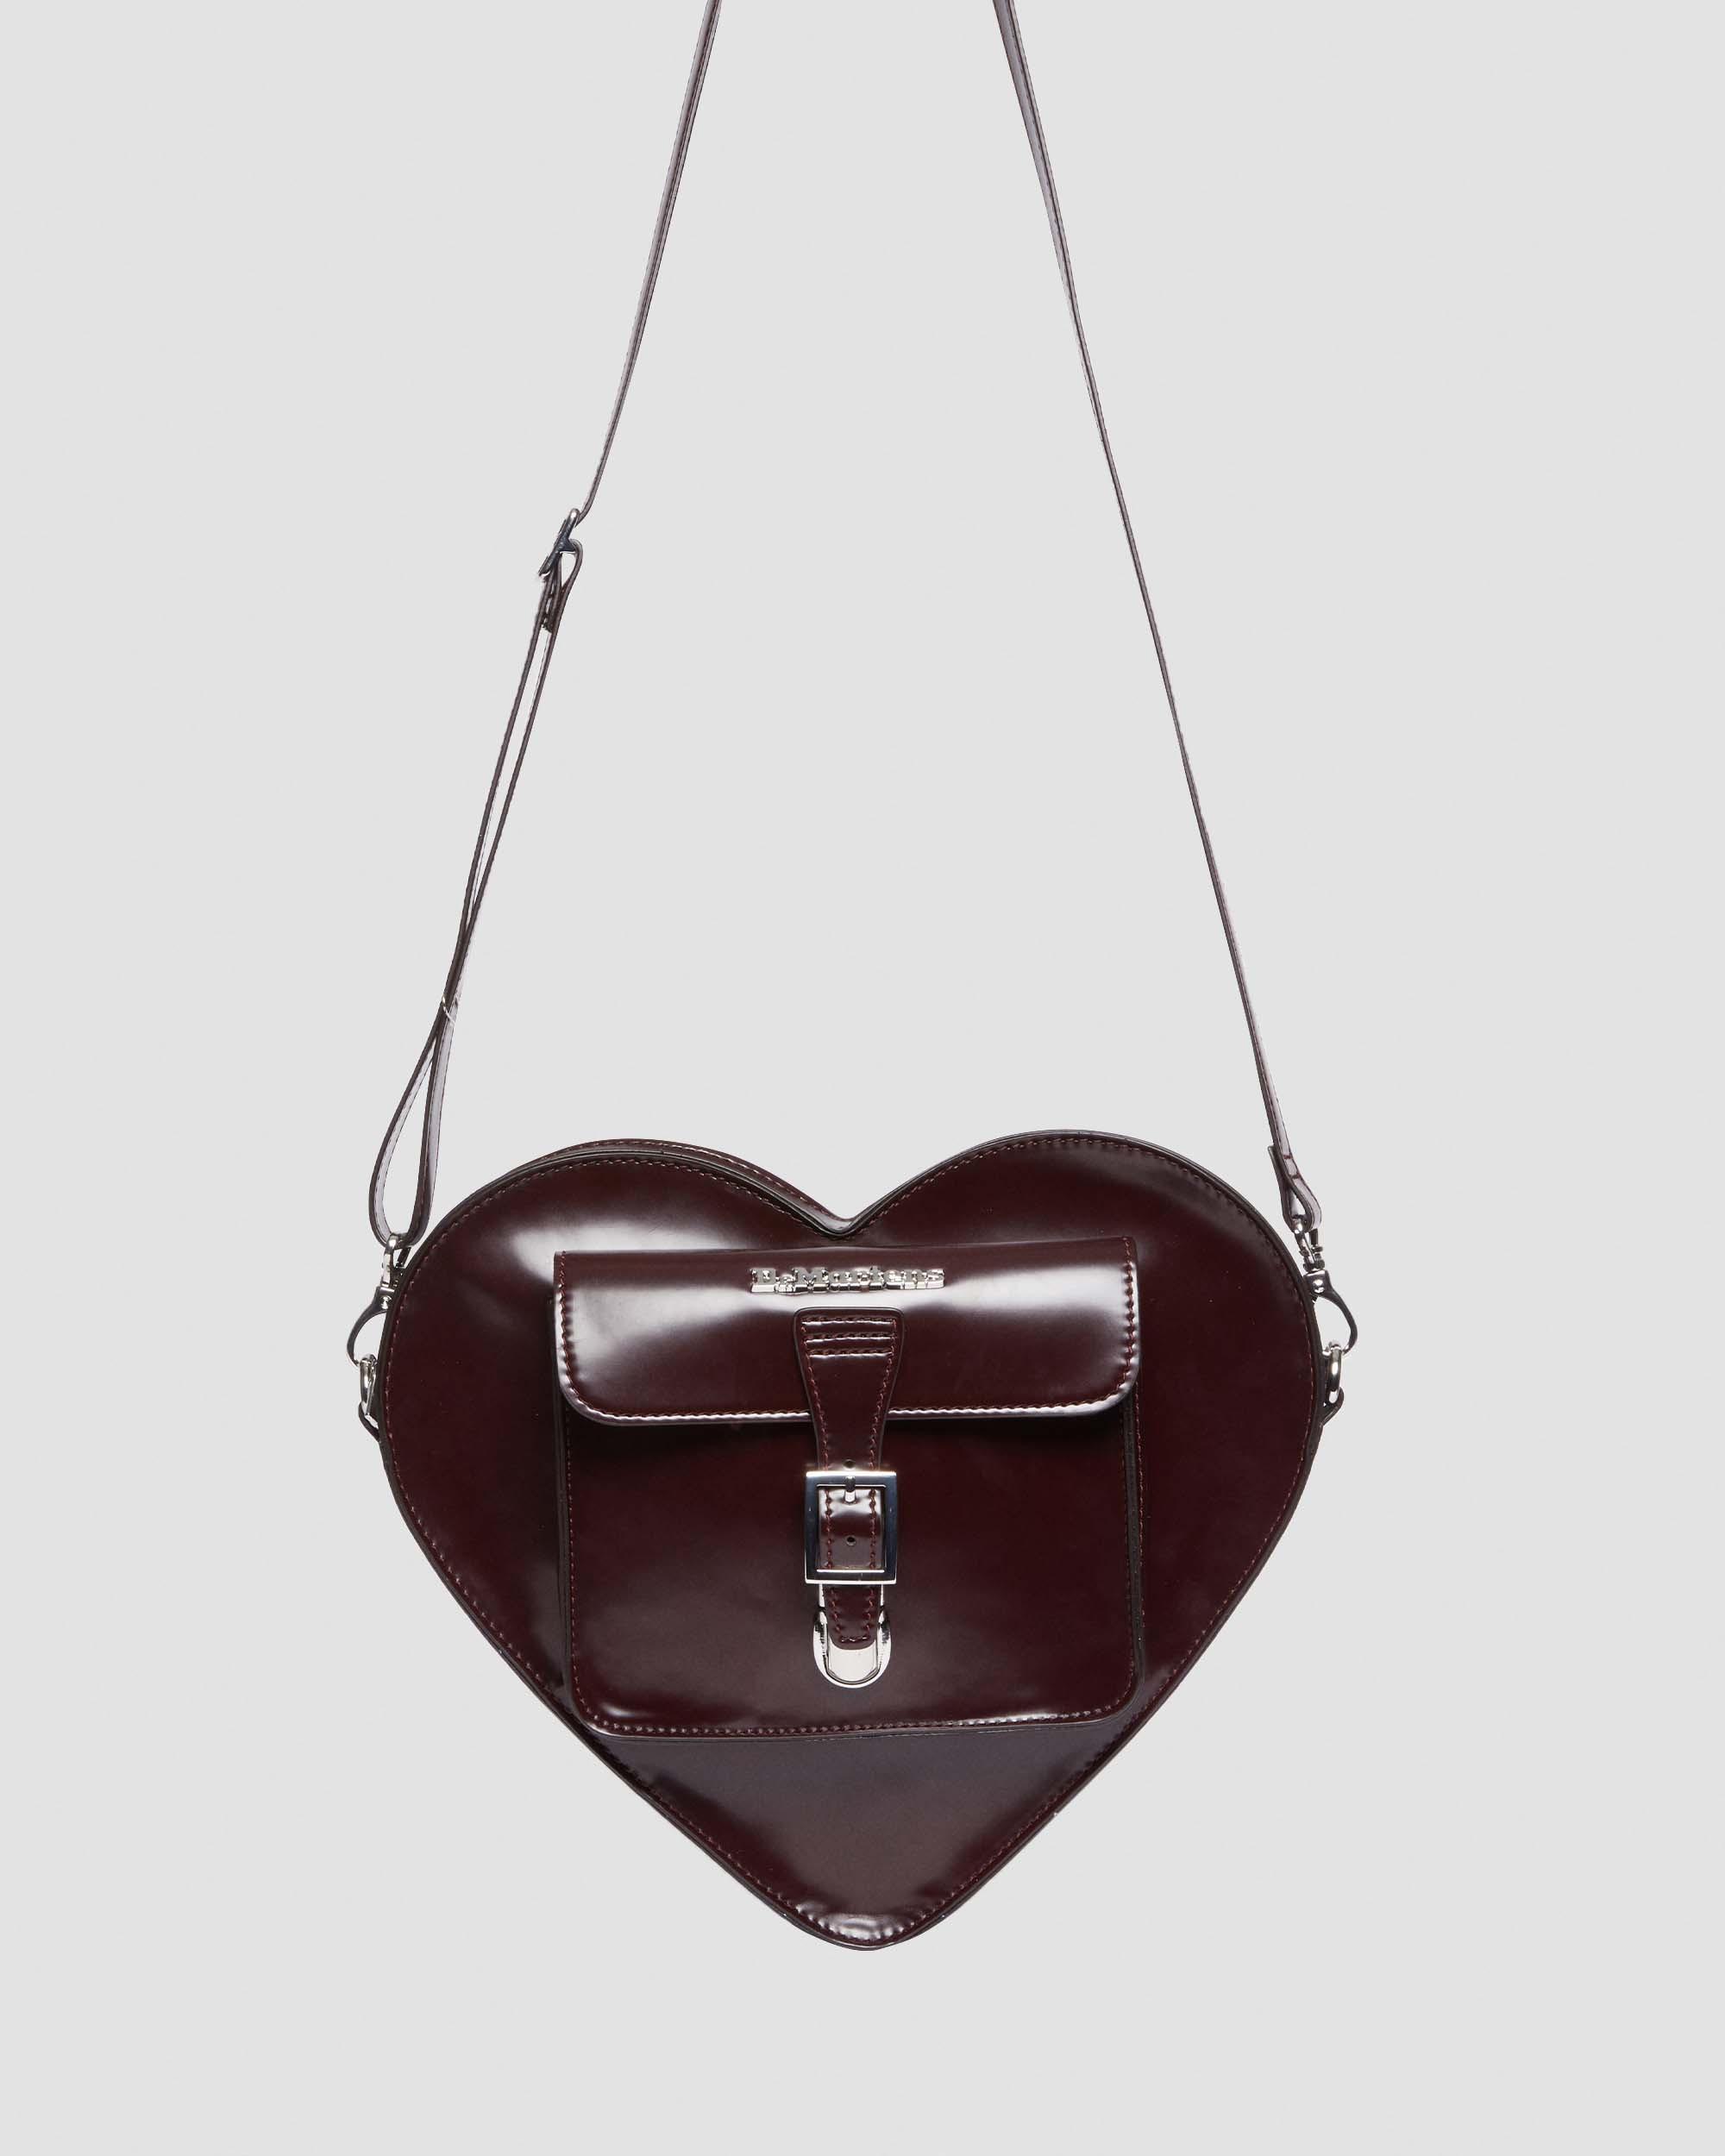 Dr Marten Heart Bag  Heart shaped bag, Heart bag, Bags